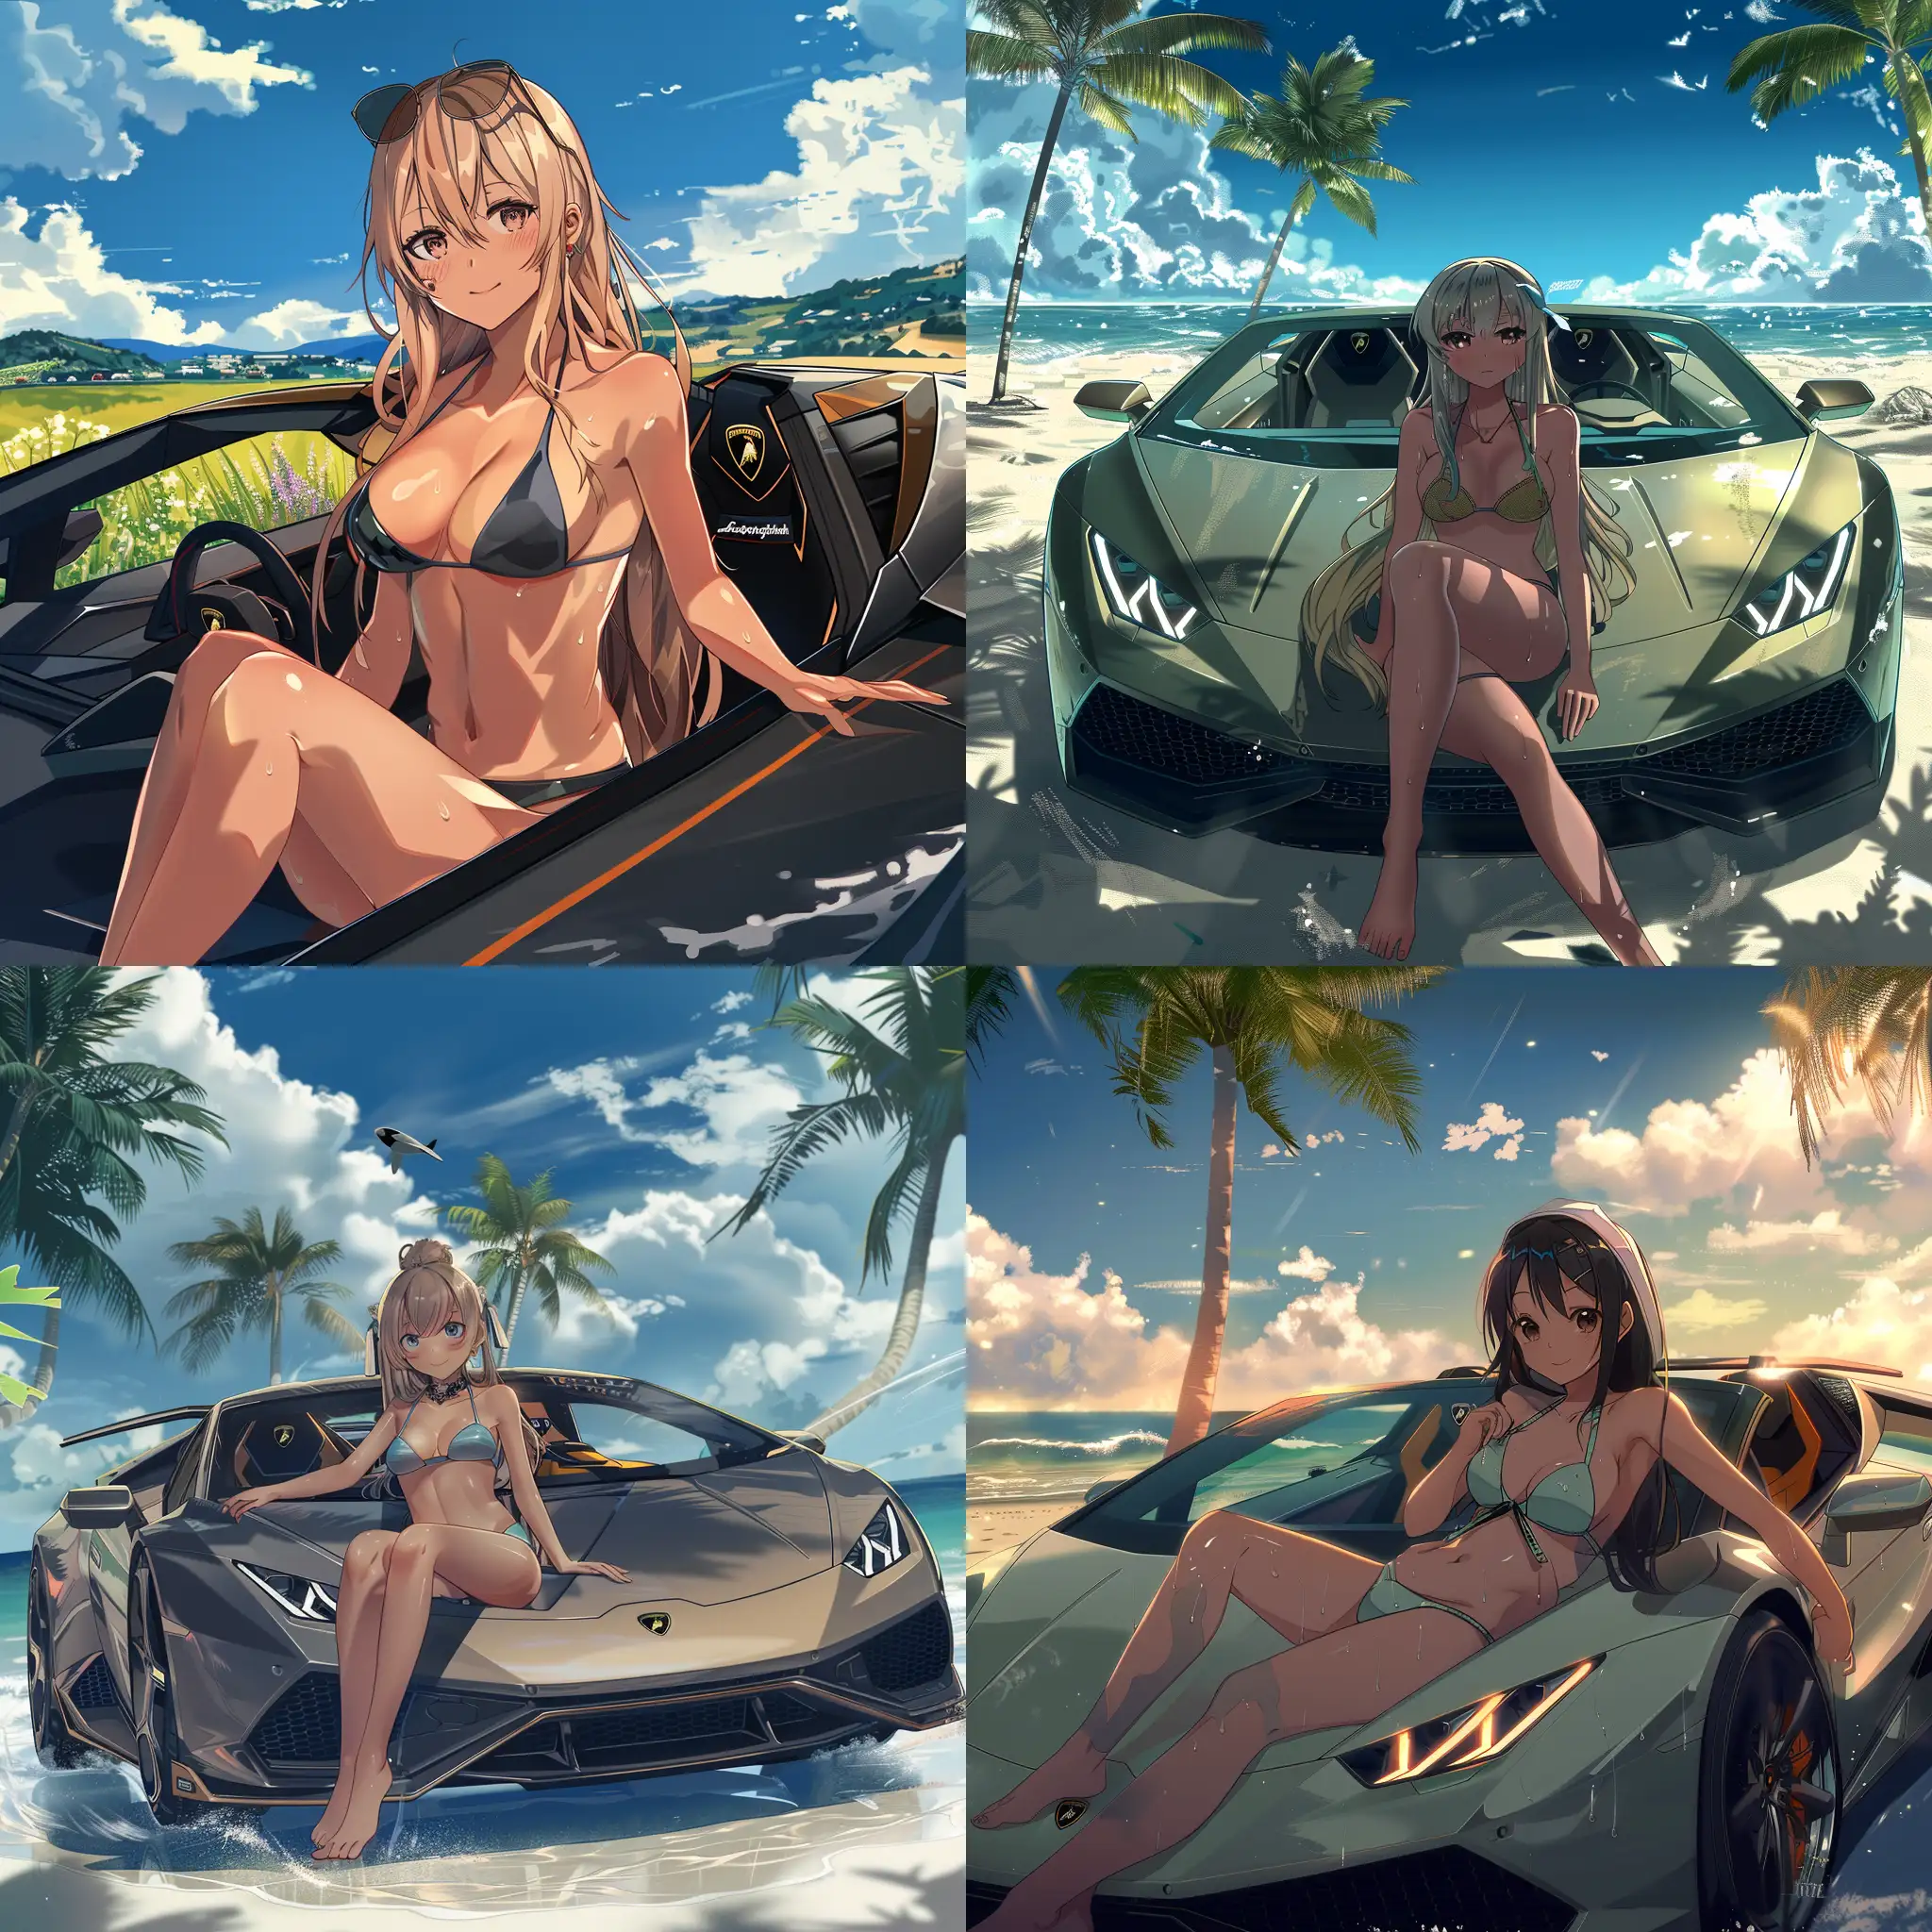 Anime-Girl-in-Swimsuit-Relaxing-in-Lamborghini